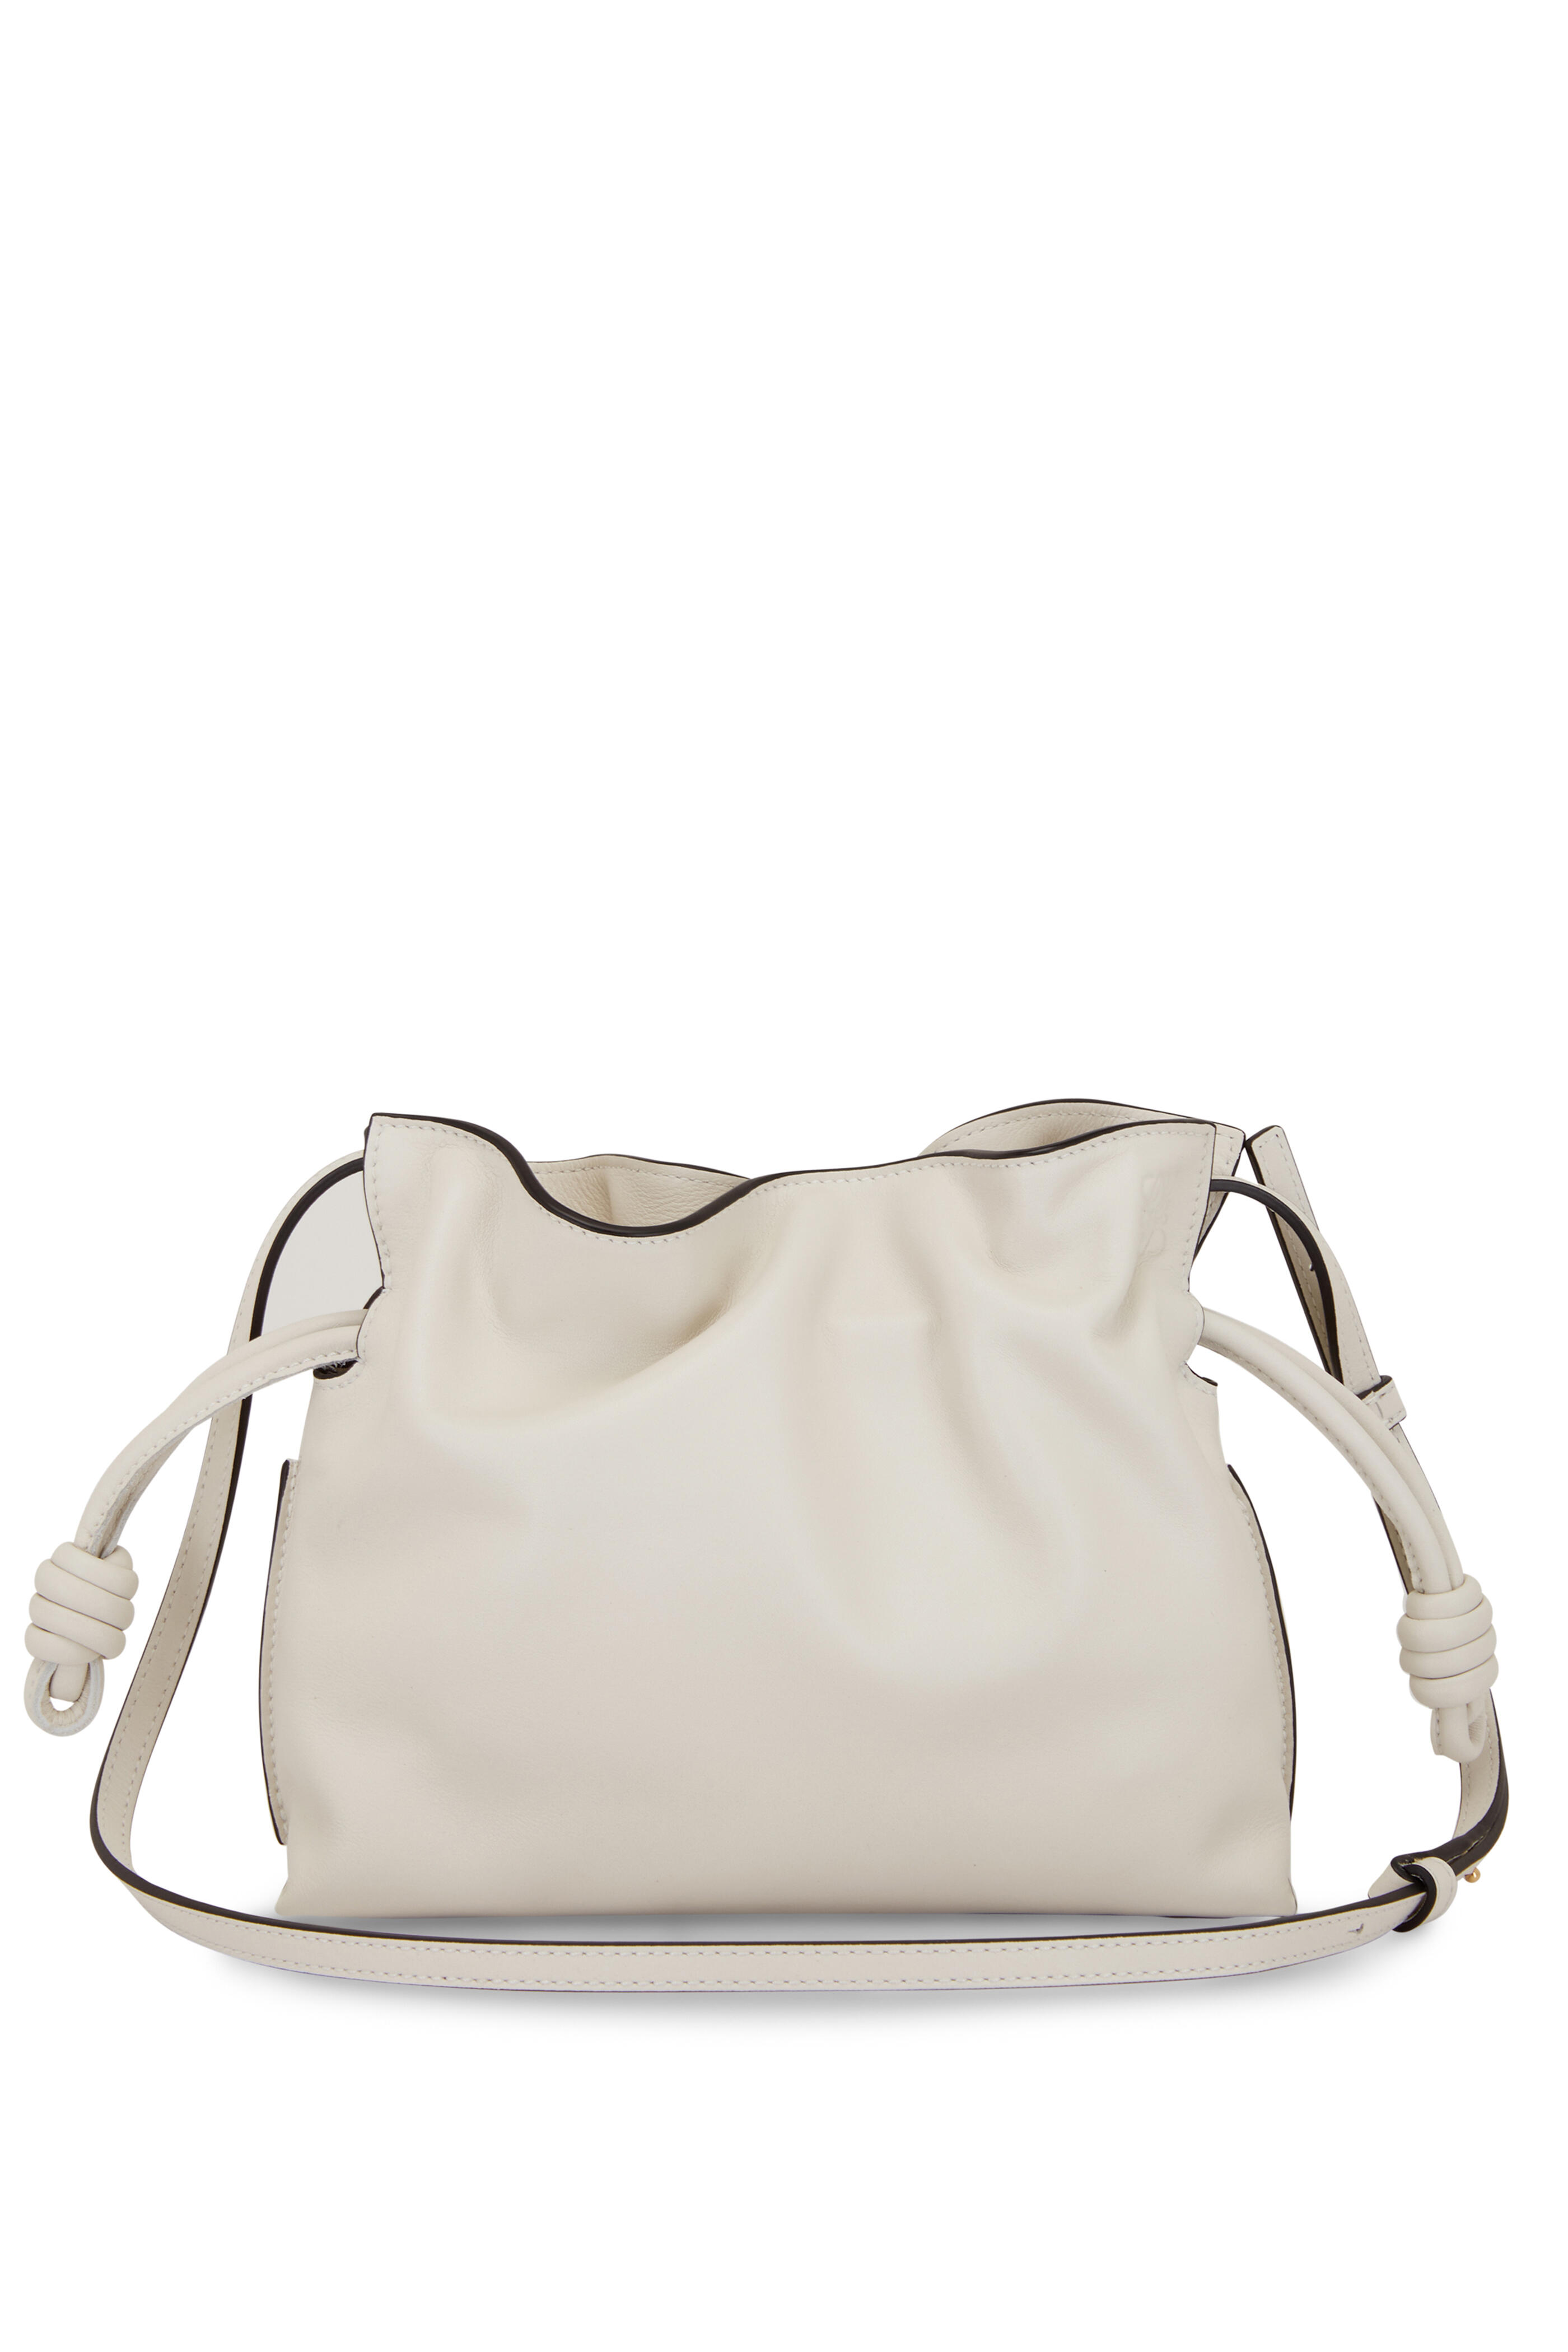 Loewe Flamenco Clutch Nano Bag in Soft White